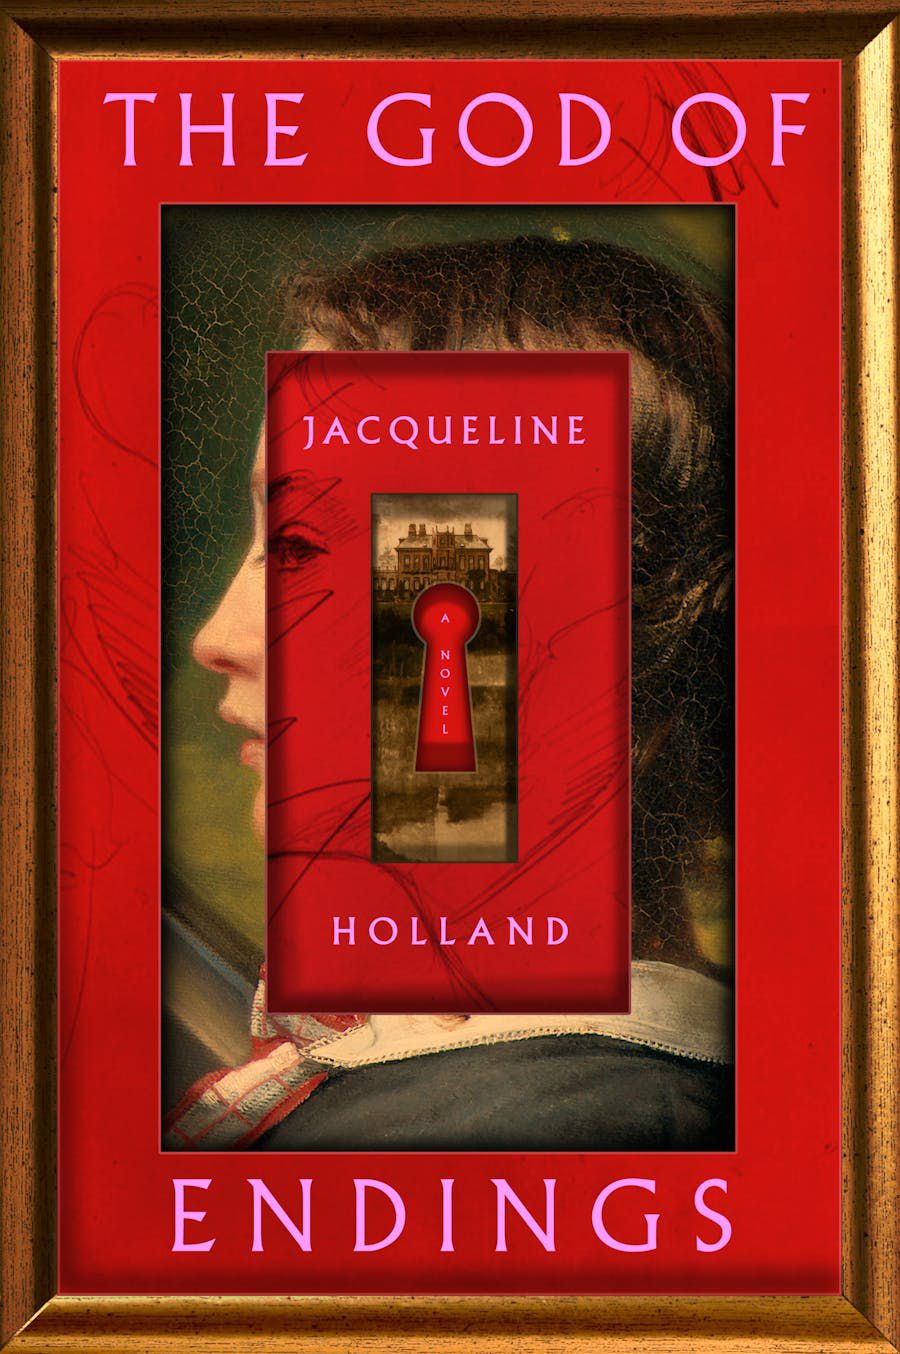 Immagine di copertina per The God of Endings di Jacqueline Holland, un ritratto laterale di una donna con quella che sembra una copertina di un libro più piccola (con un buco della serratura) sul viso.